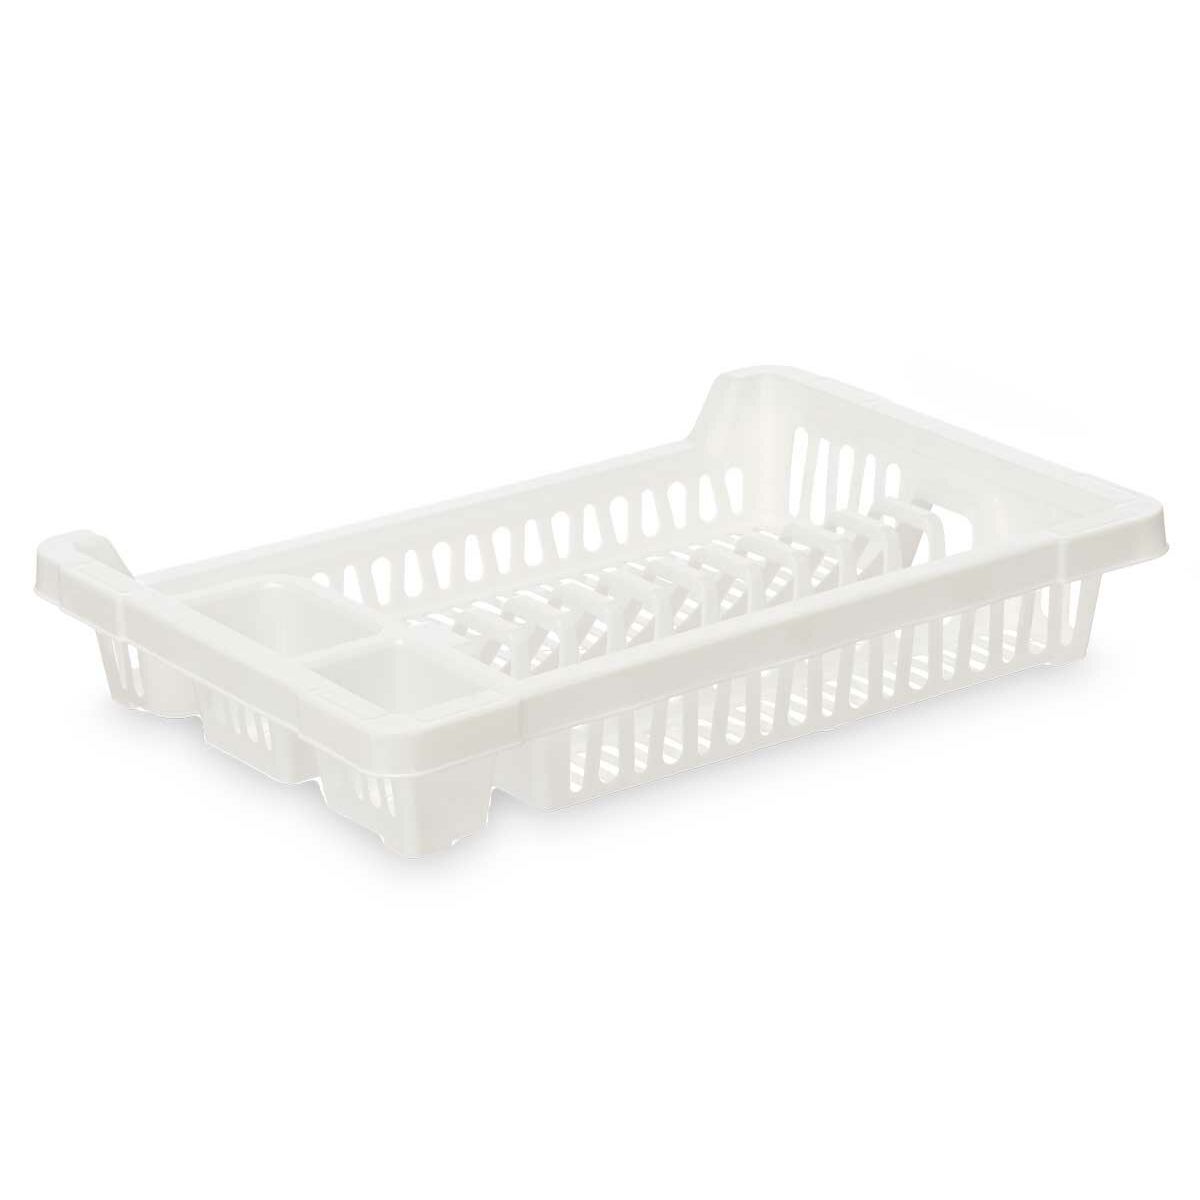 Afdruiprek voor Keukengootsteen Wit Plastic 42,5 x 7 x 29,5 cm (24 Stuks)